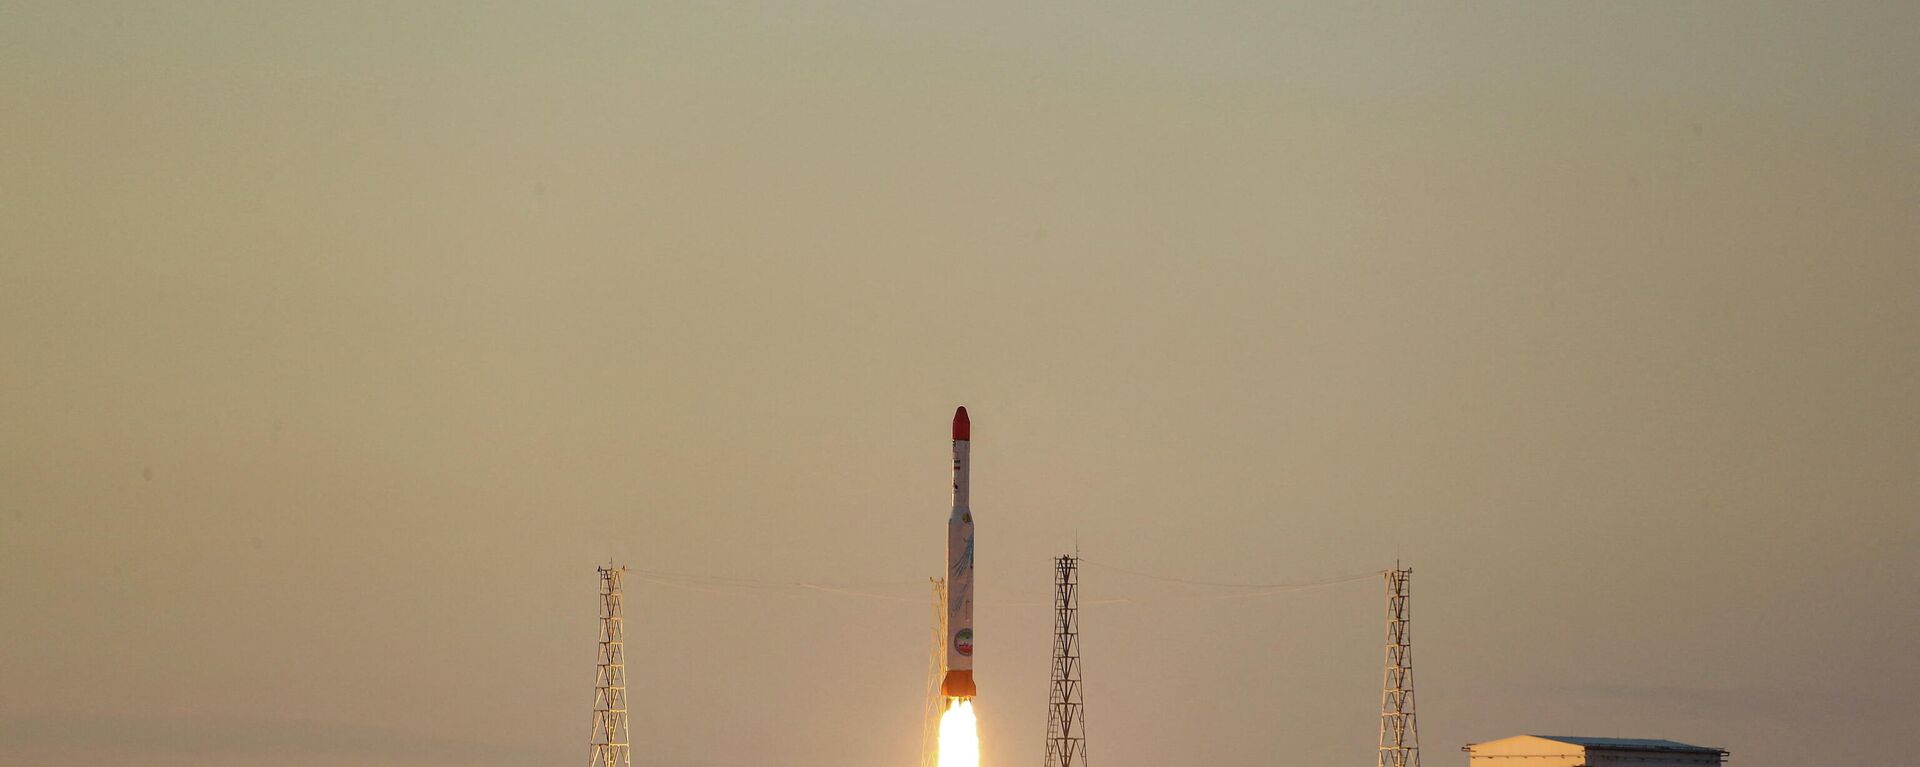 O foguete transportador de satélites iraniano Simorgh é lançado em local desconhecido no Irã, nesta foto obtida em 30 de dezembro de 2021 - Sputnik Brasil, 1920, 01.01.2022